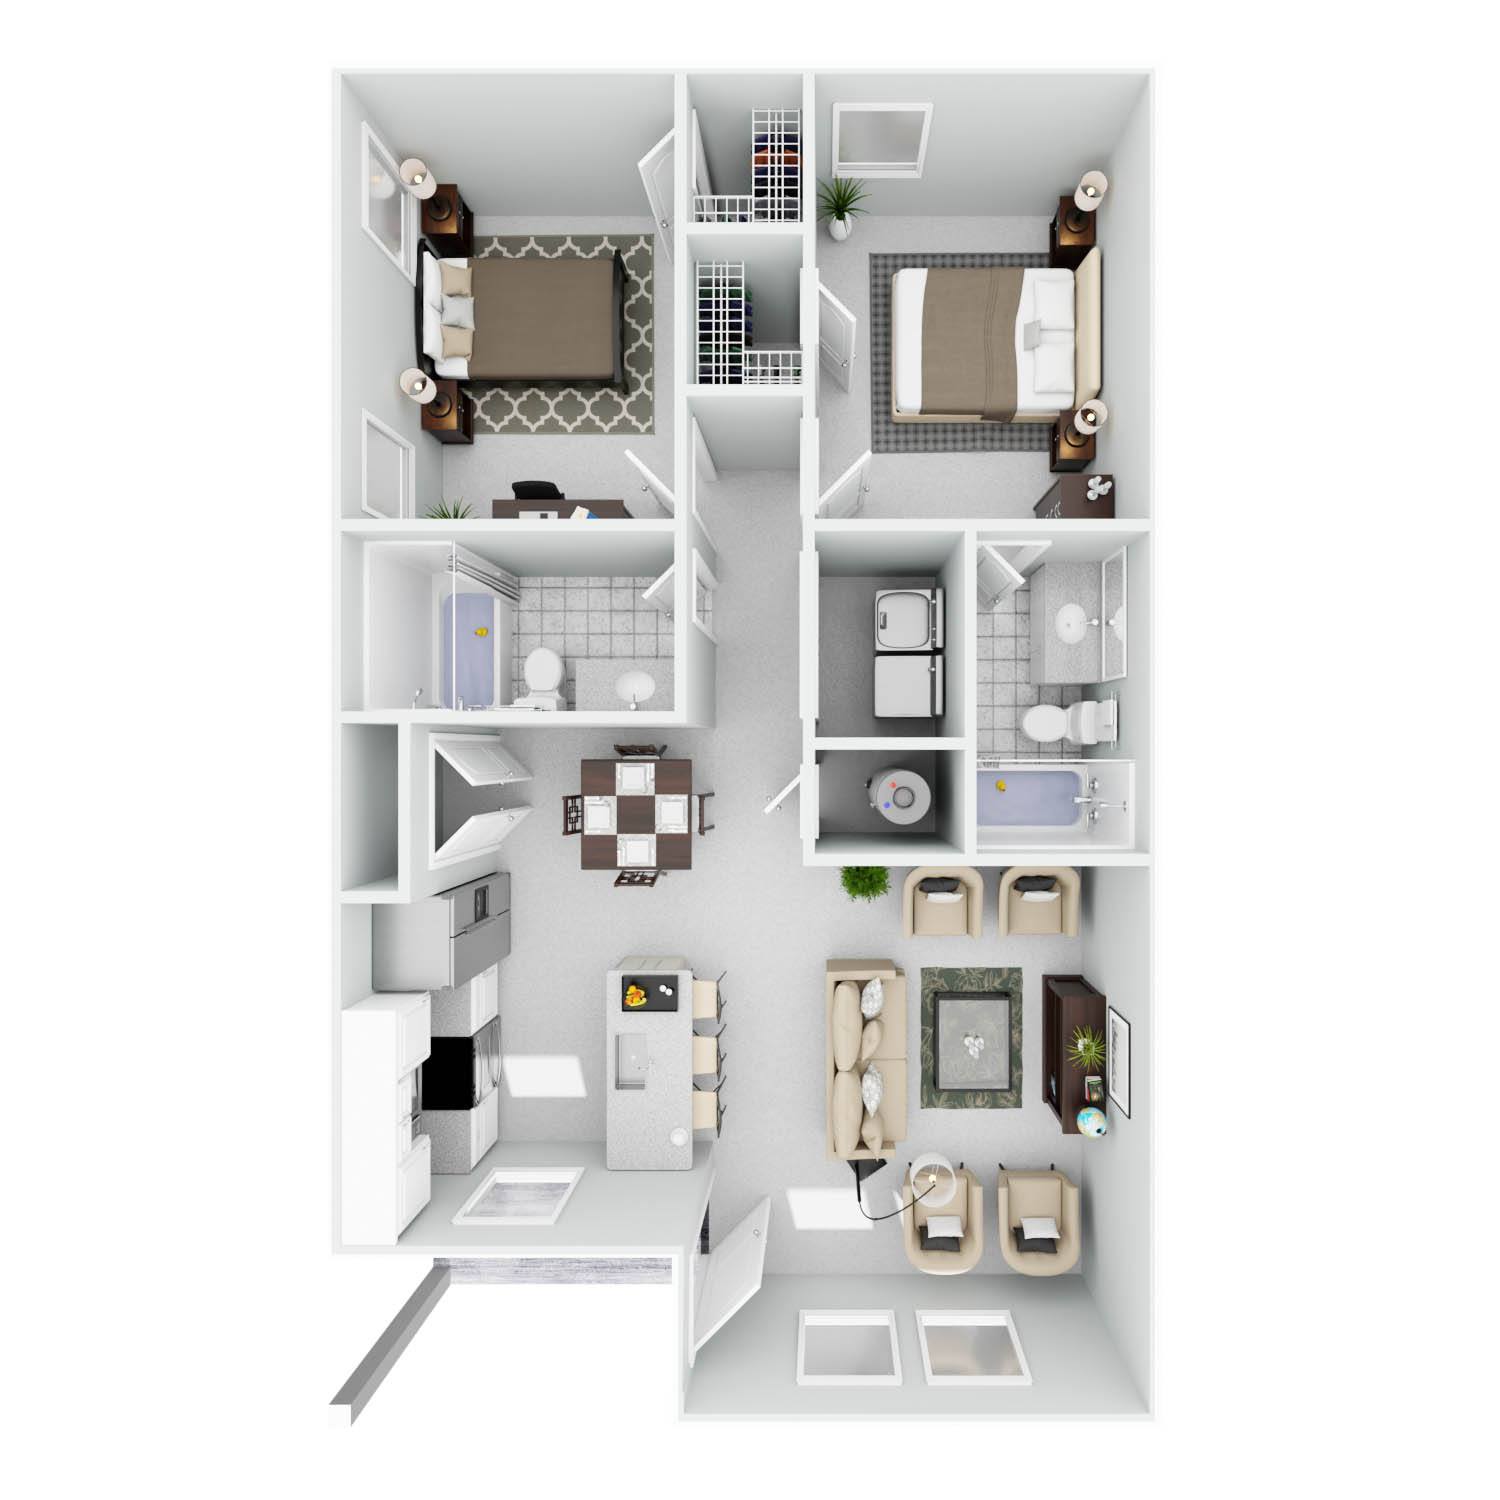 a floor plan of a 1 bedroom 1190 sqft apartment